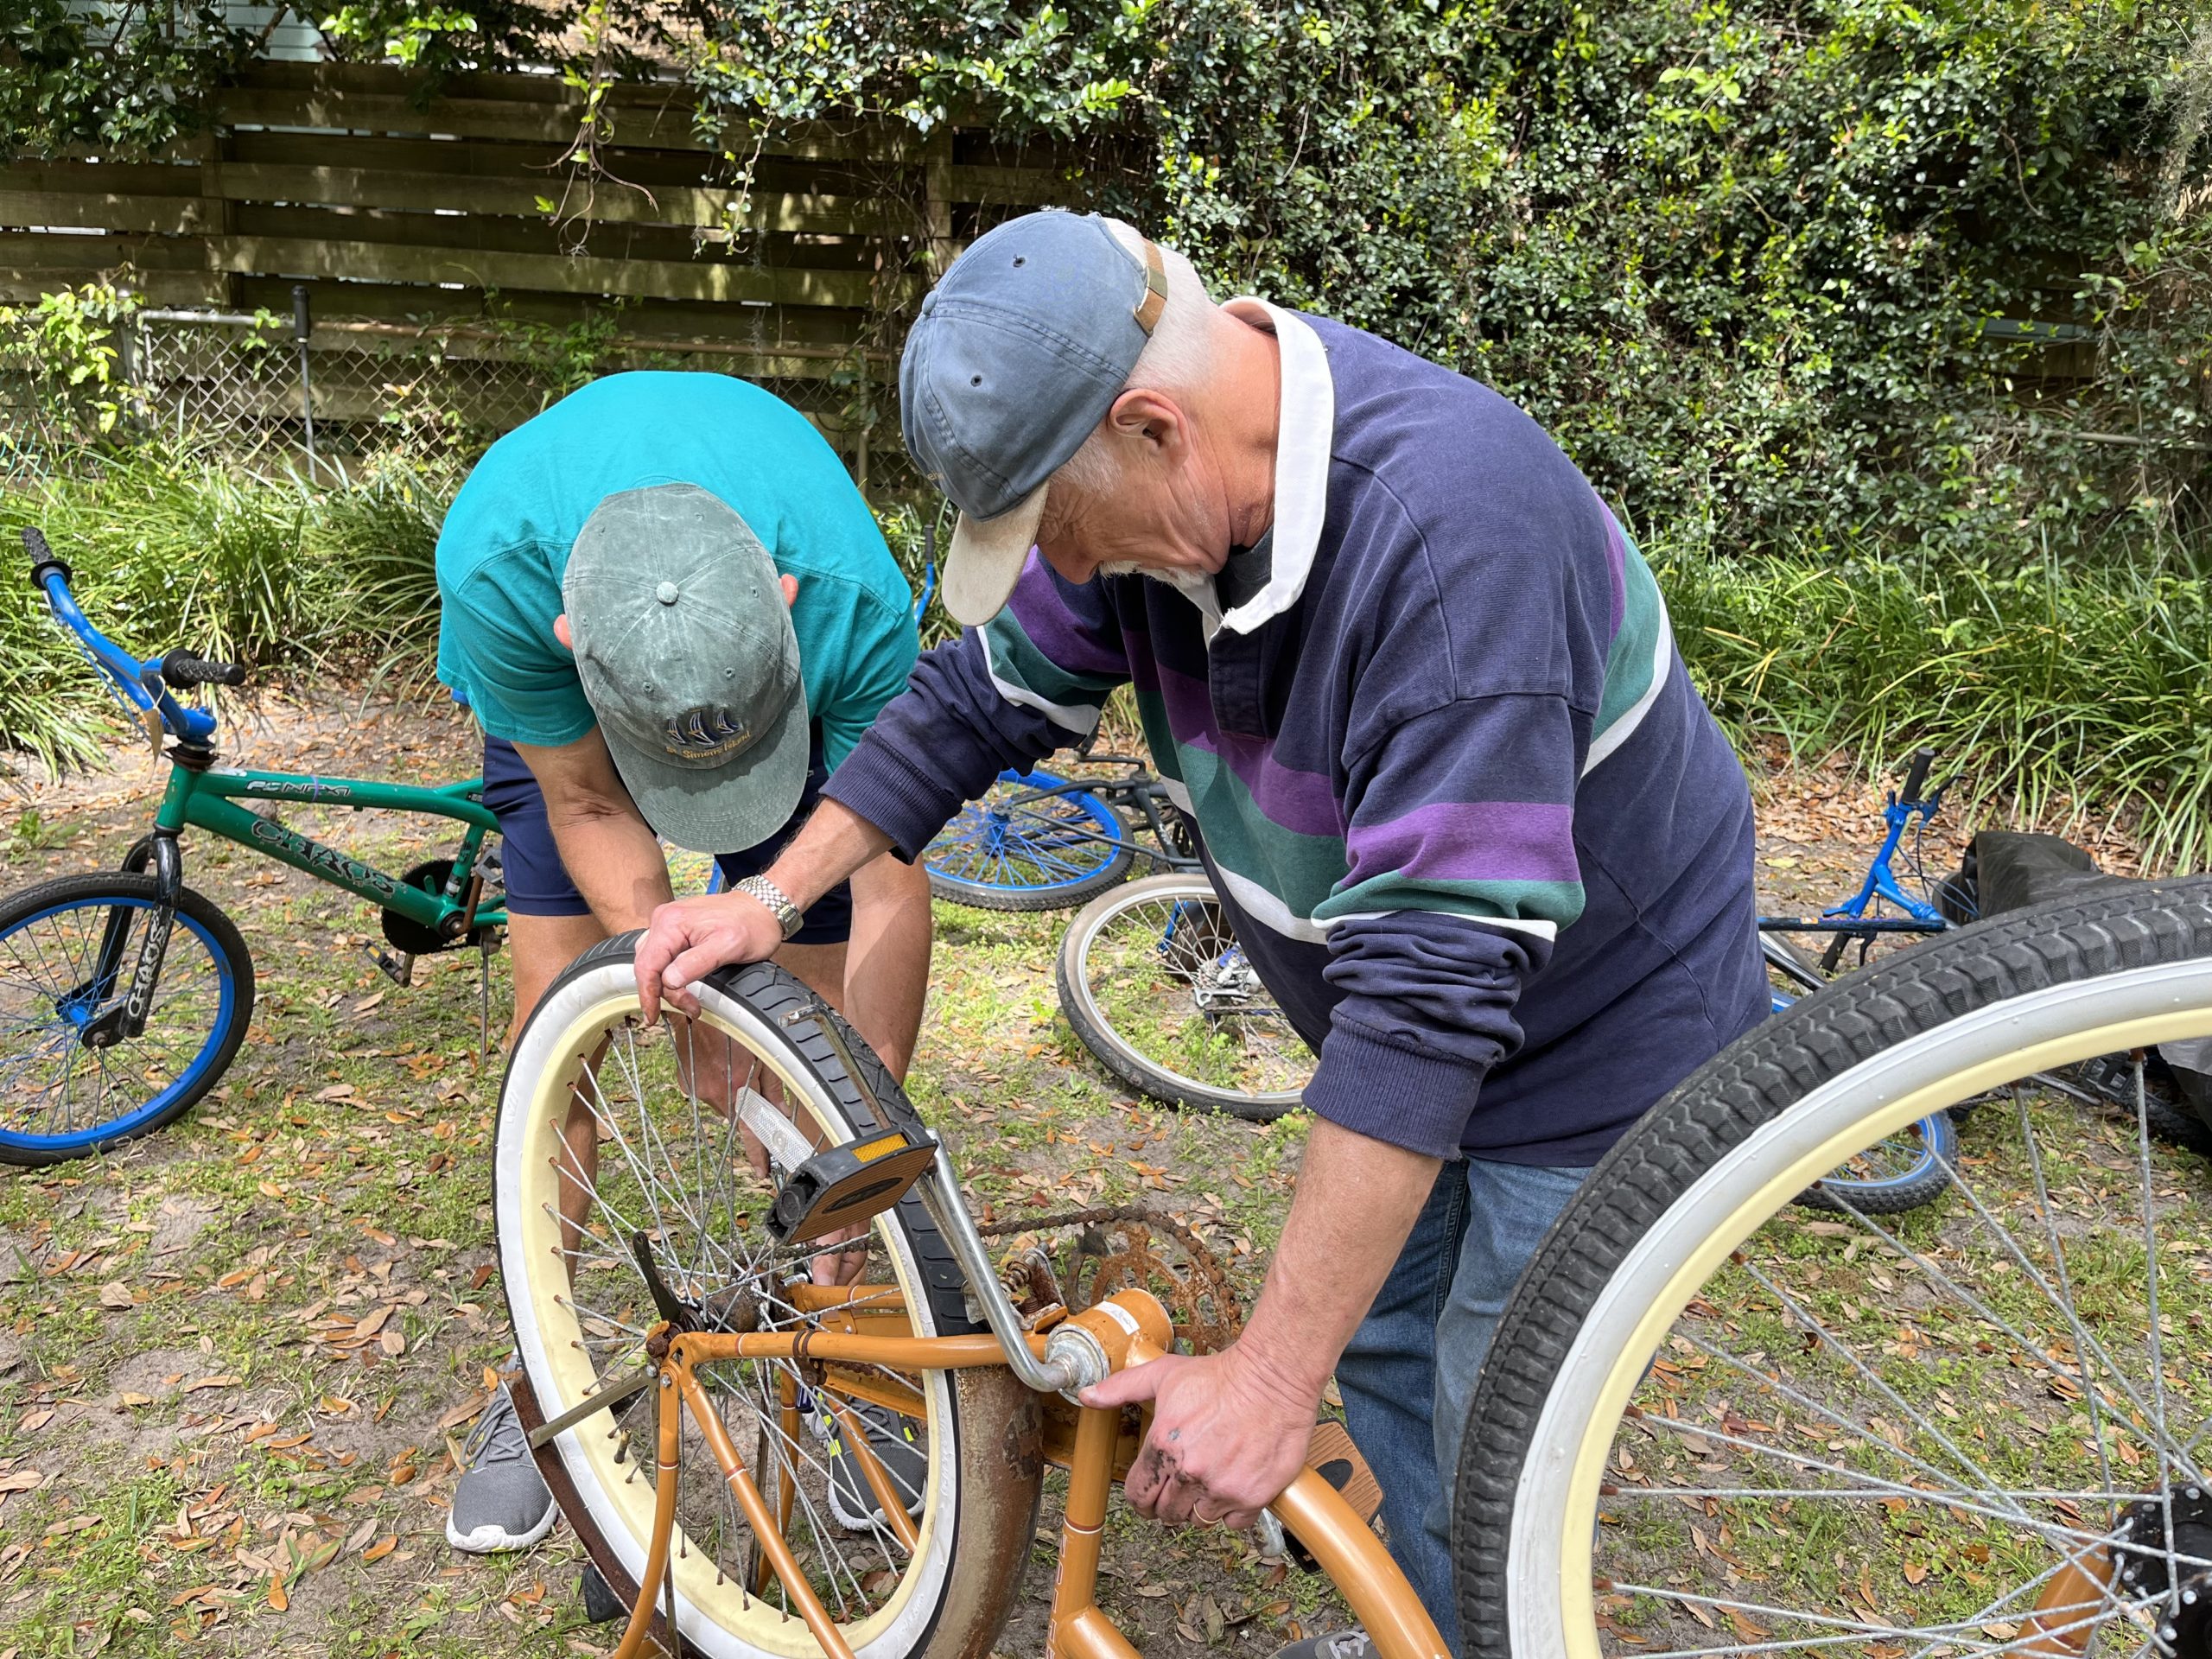 Two gentlemen restoring bikes